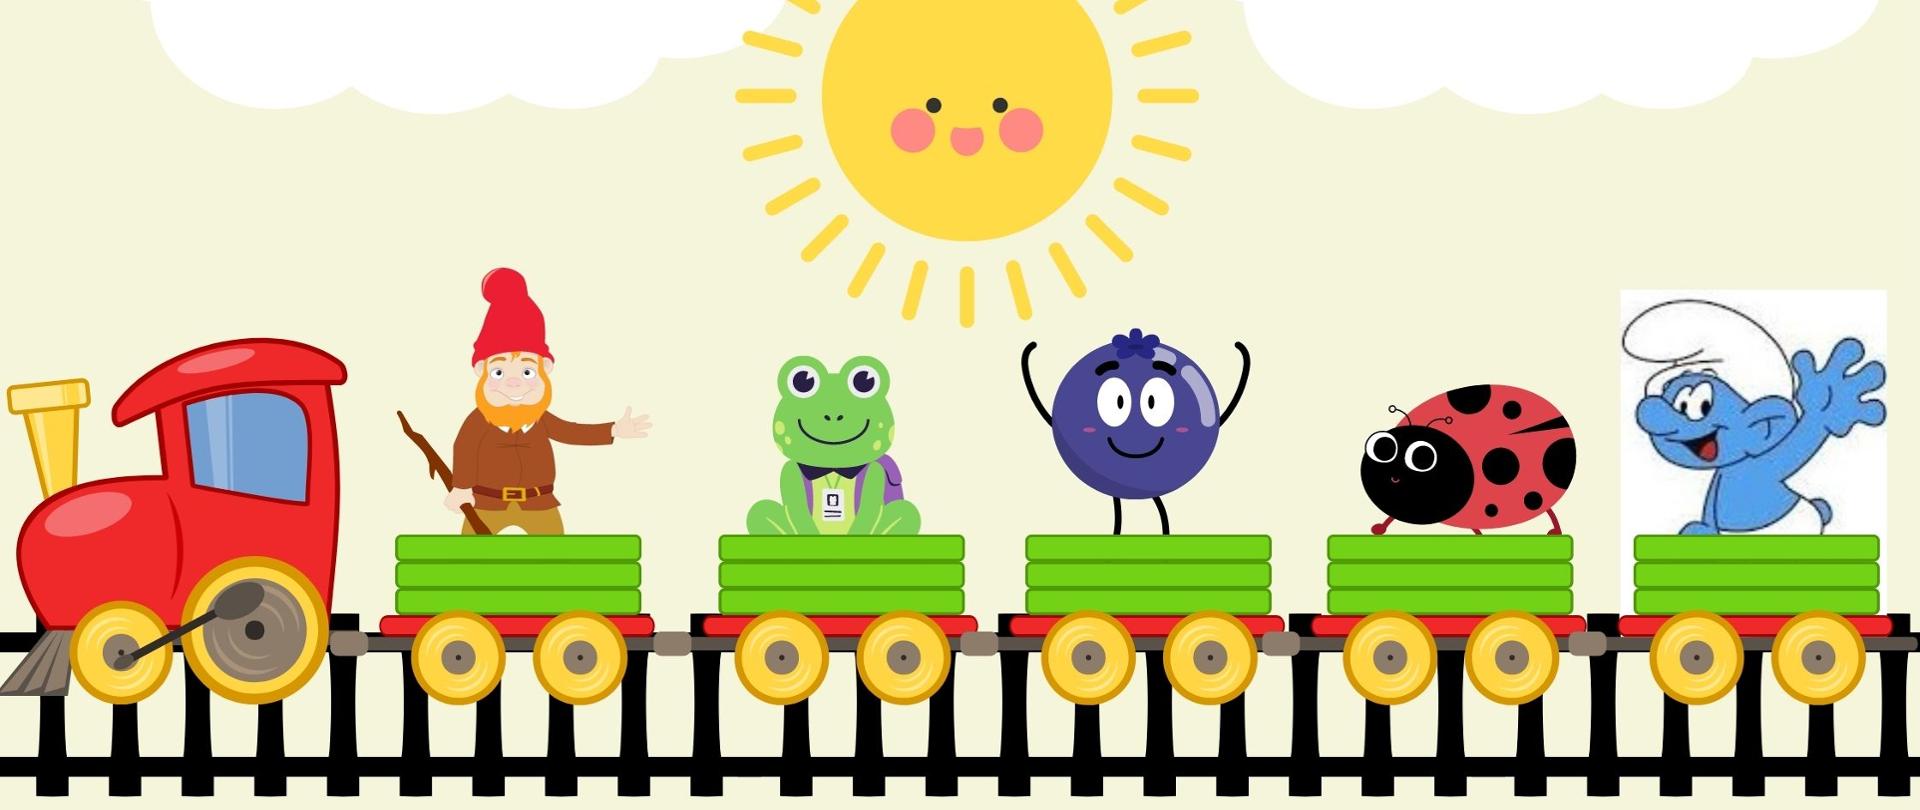 Grafika przedstawia kolorowy pociąg z postaciami z bajki. W tle znajduje się słońce z chmurami oraz kwiaty. 